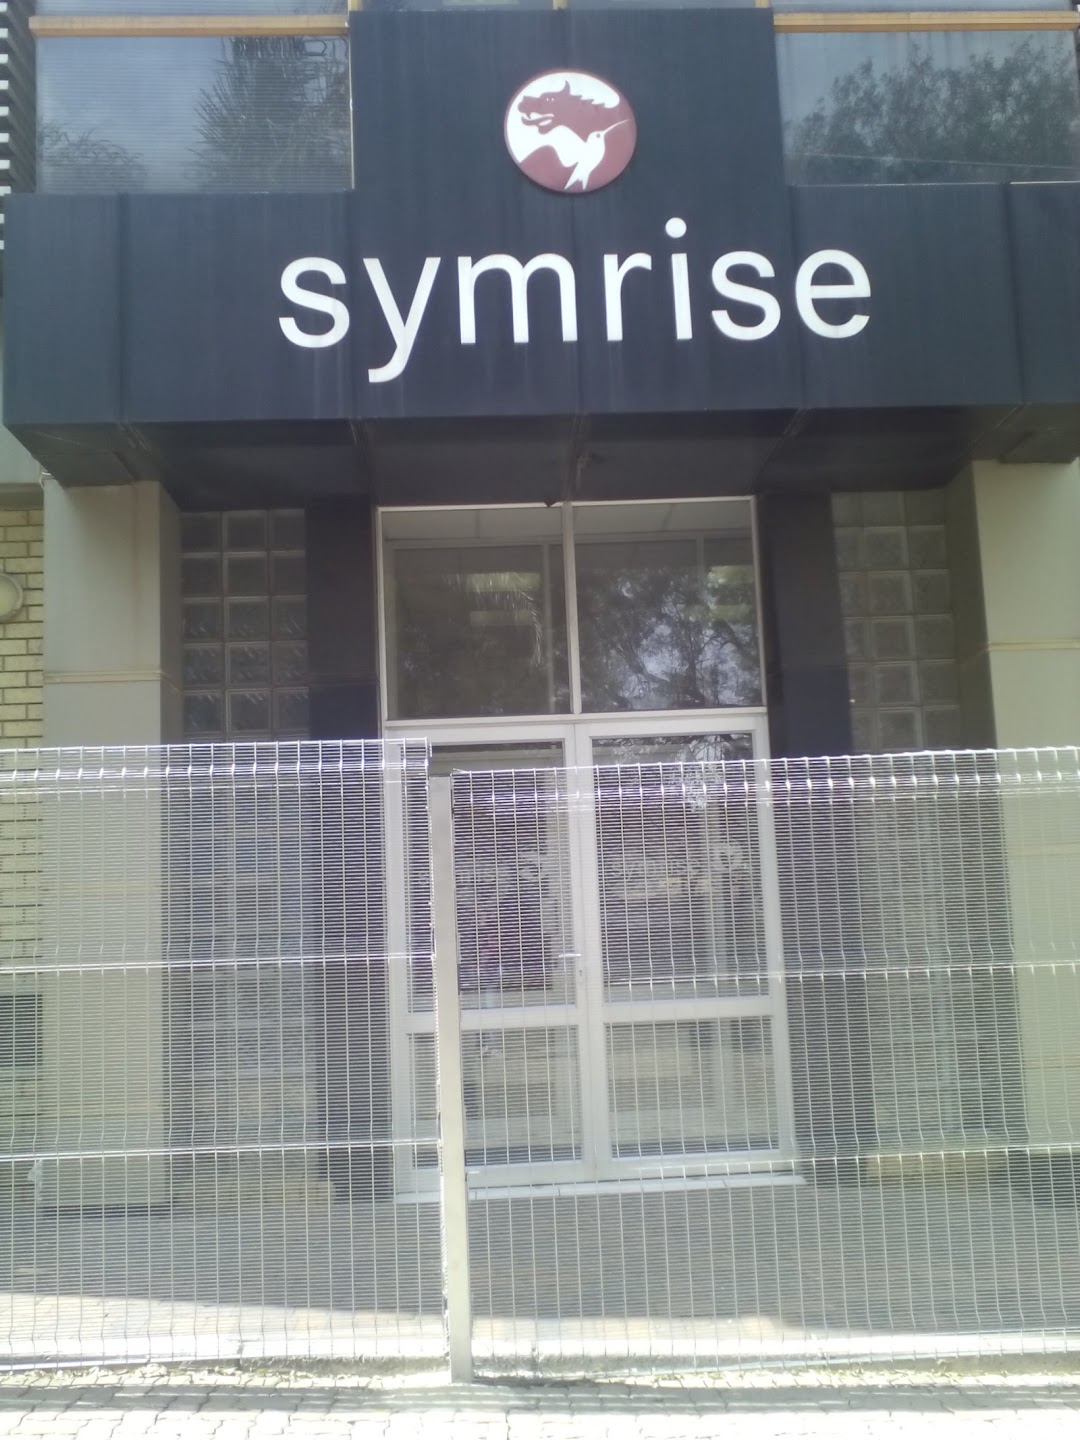 symrise